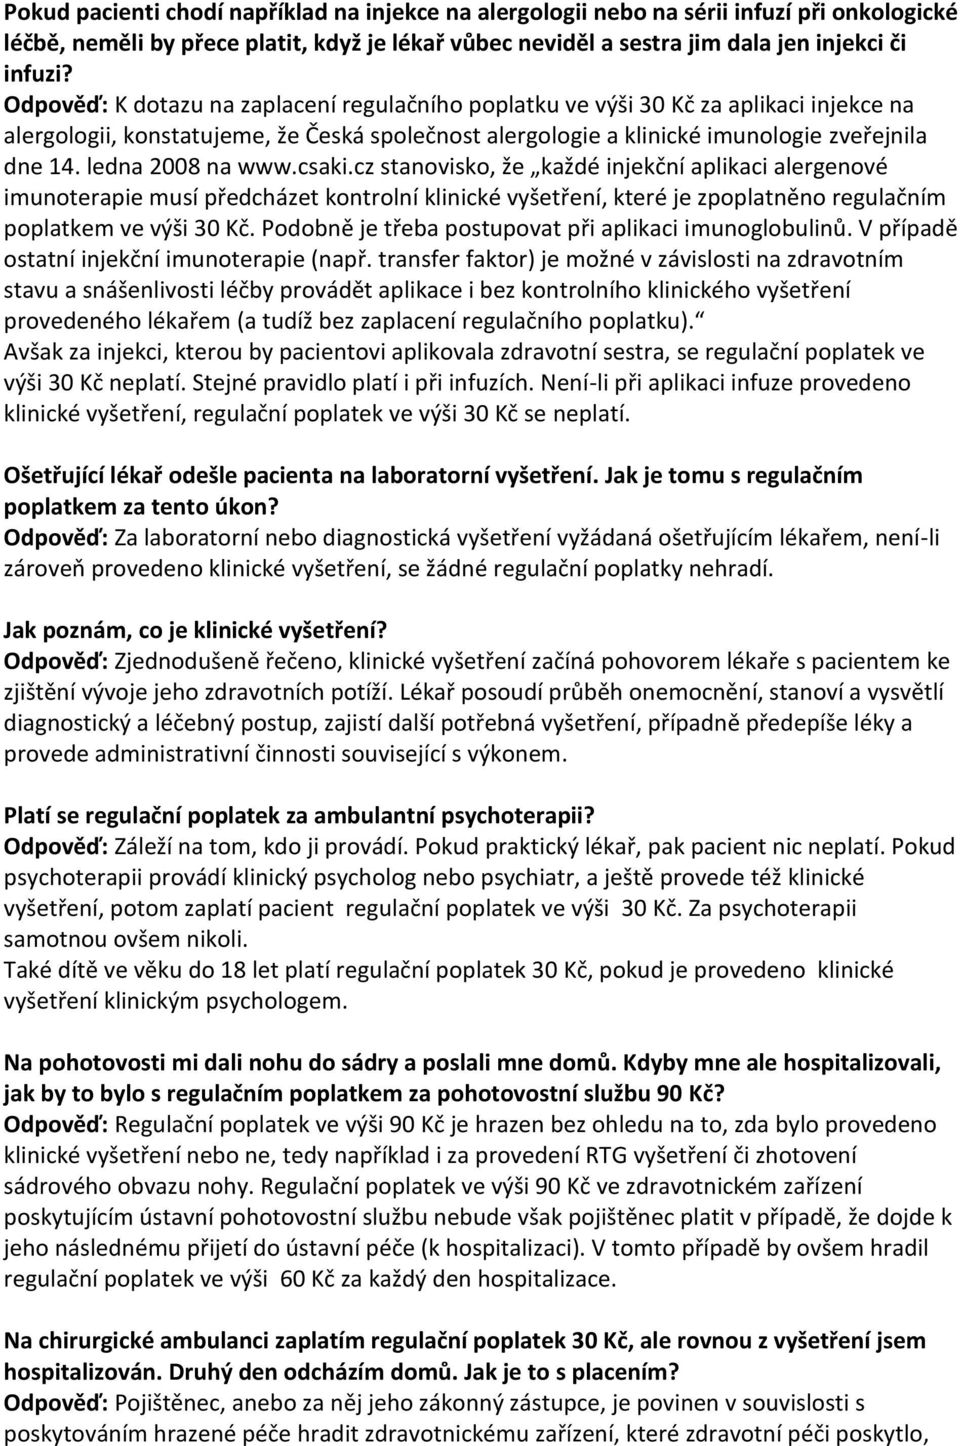 ledna 2008 na www.csaki.cz stanovisko, že každé injekční aplikaci alergenové imunoterapie musí předcházet kontrolní klinické vyšetření, které je zpoplatněno regulačním poplatkem ve výši 30 Kč.